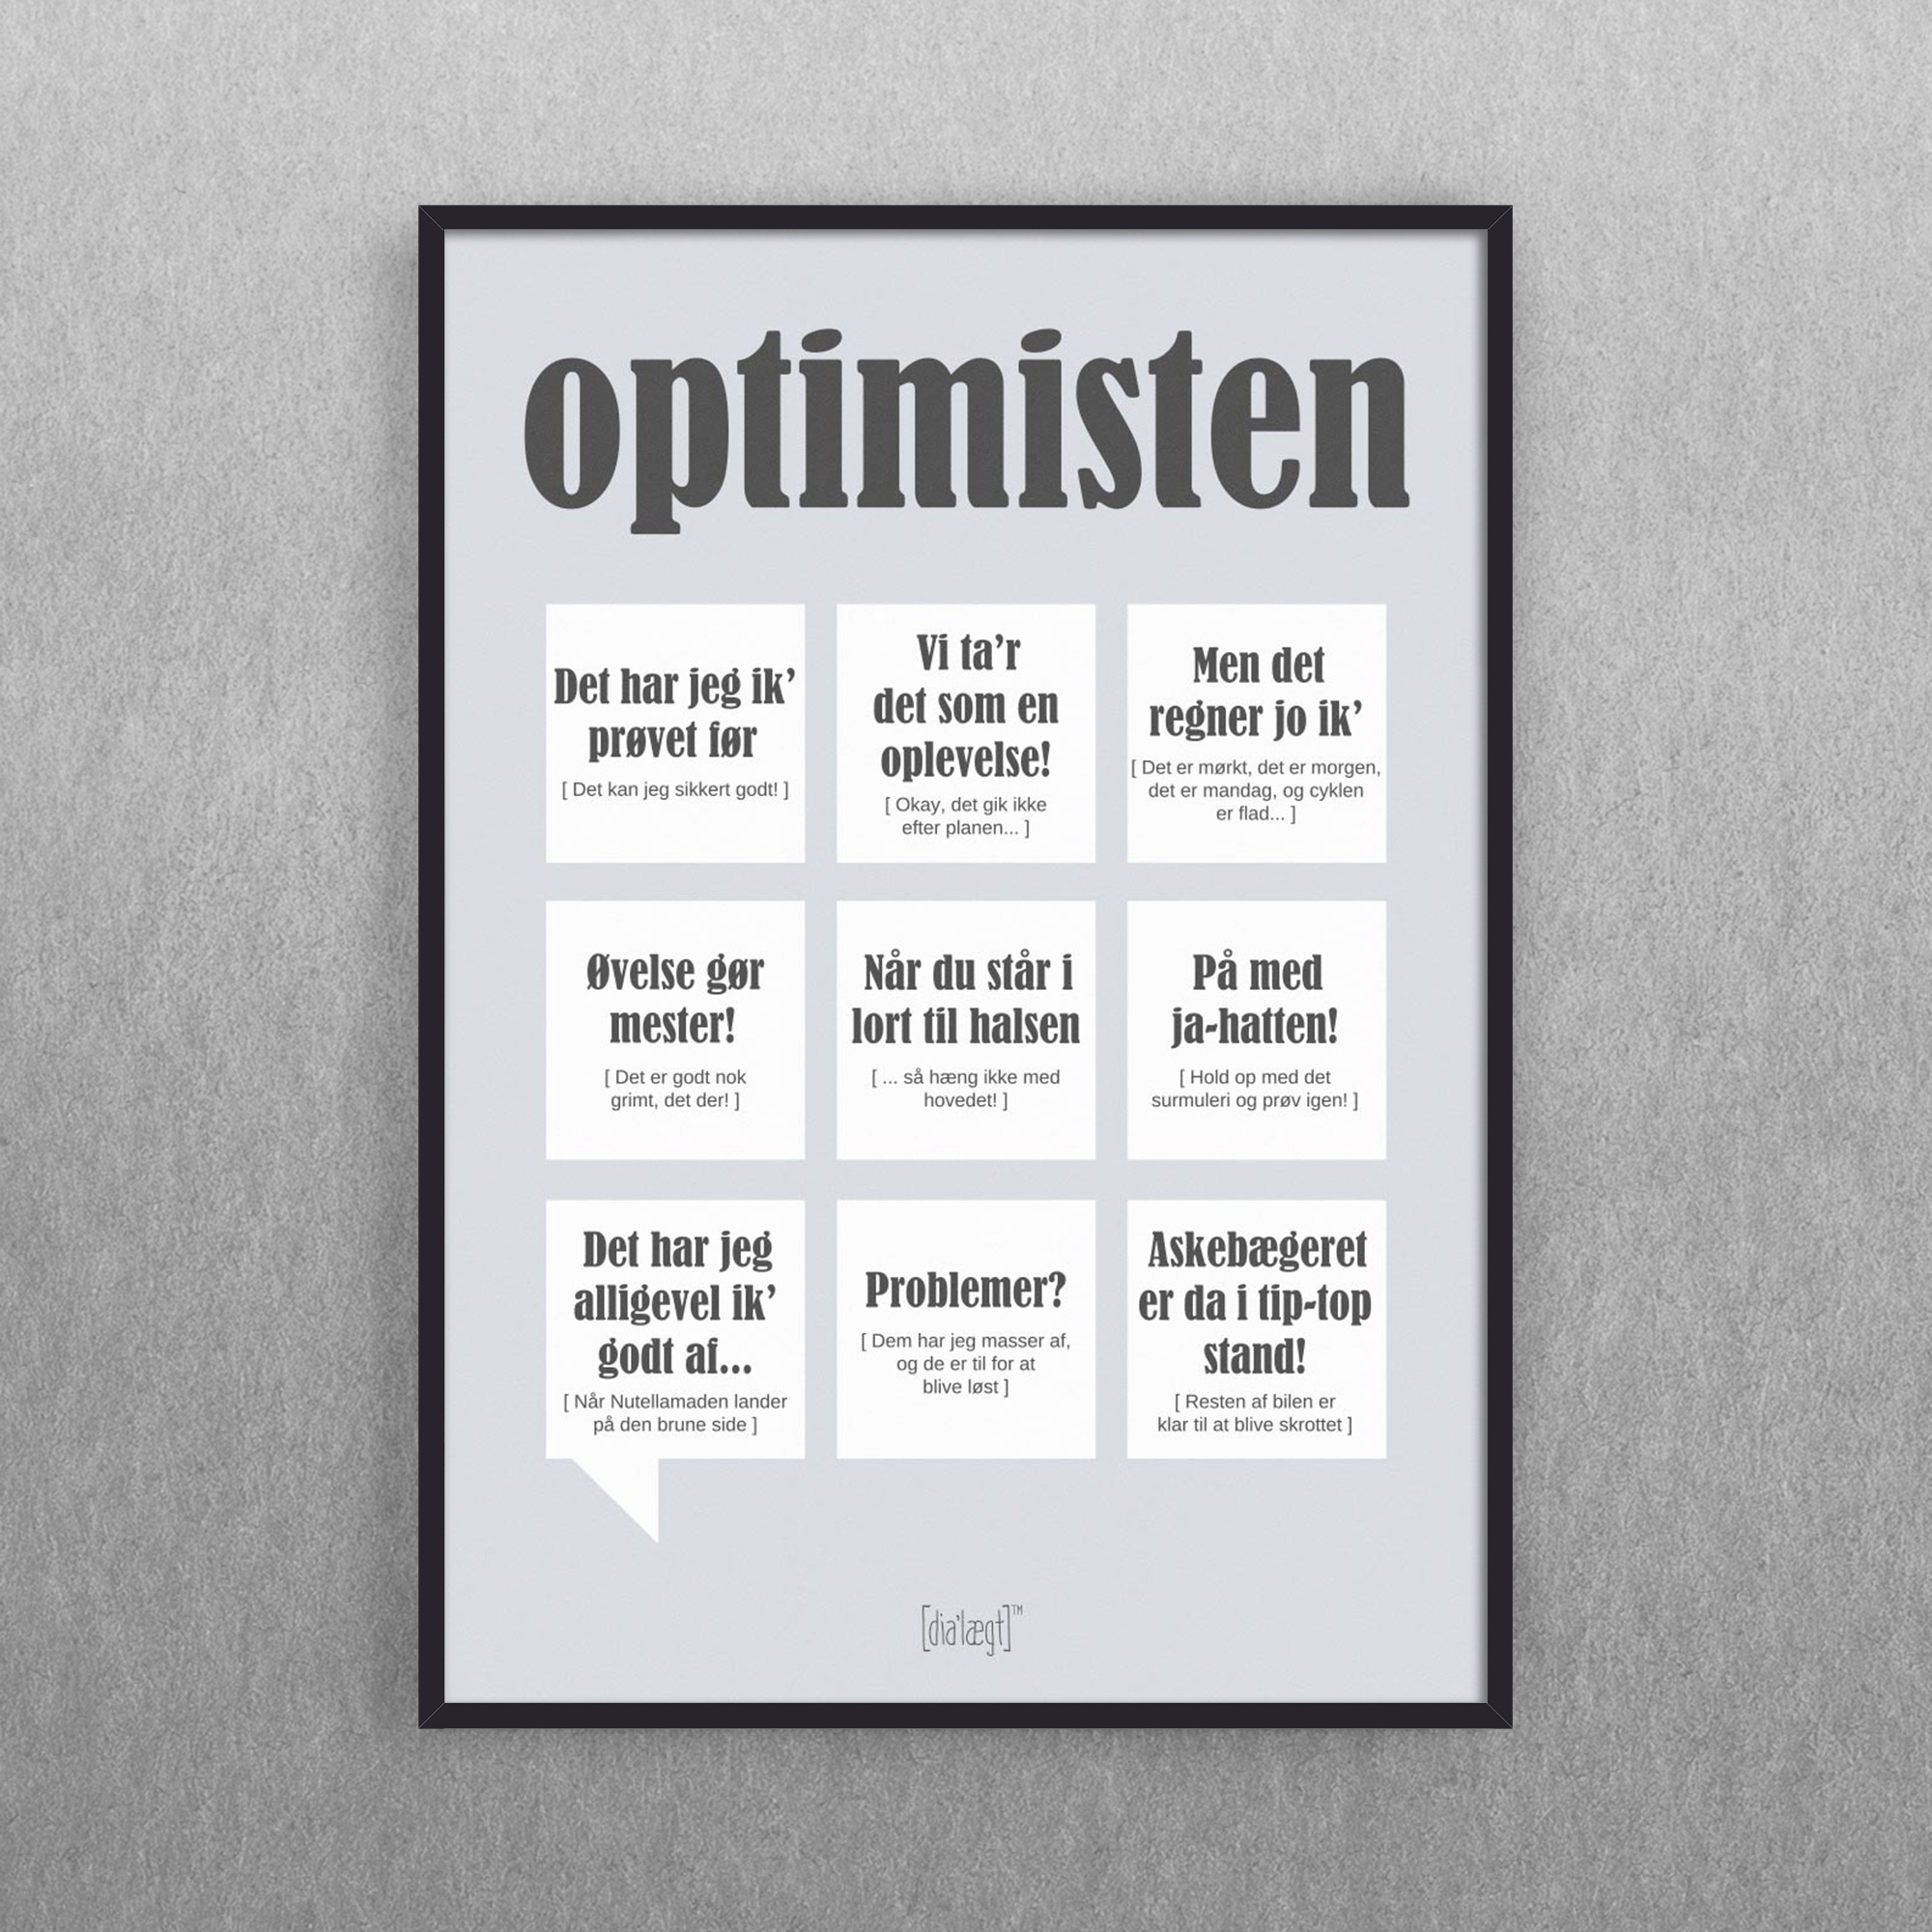 Optimisten